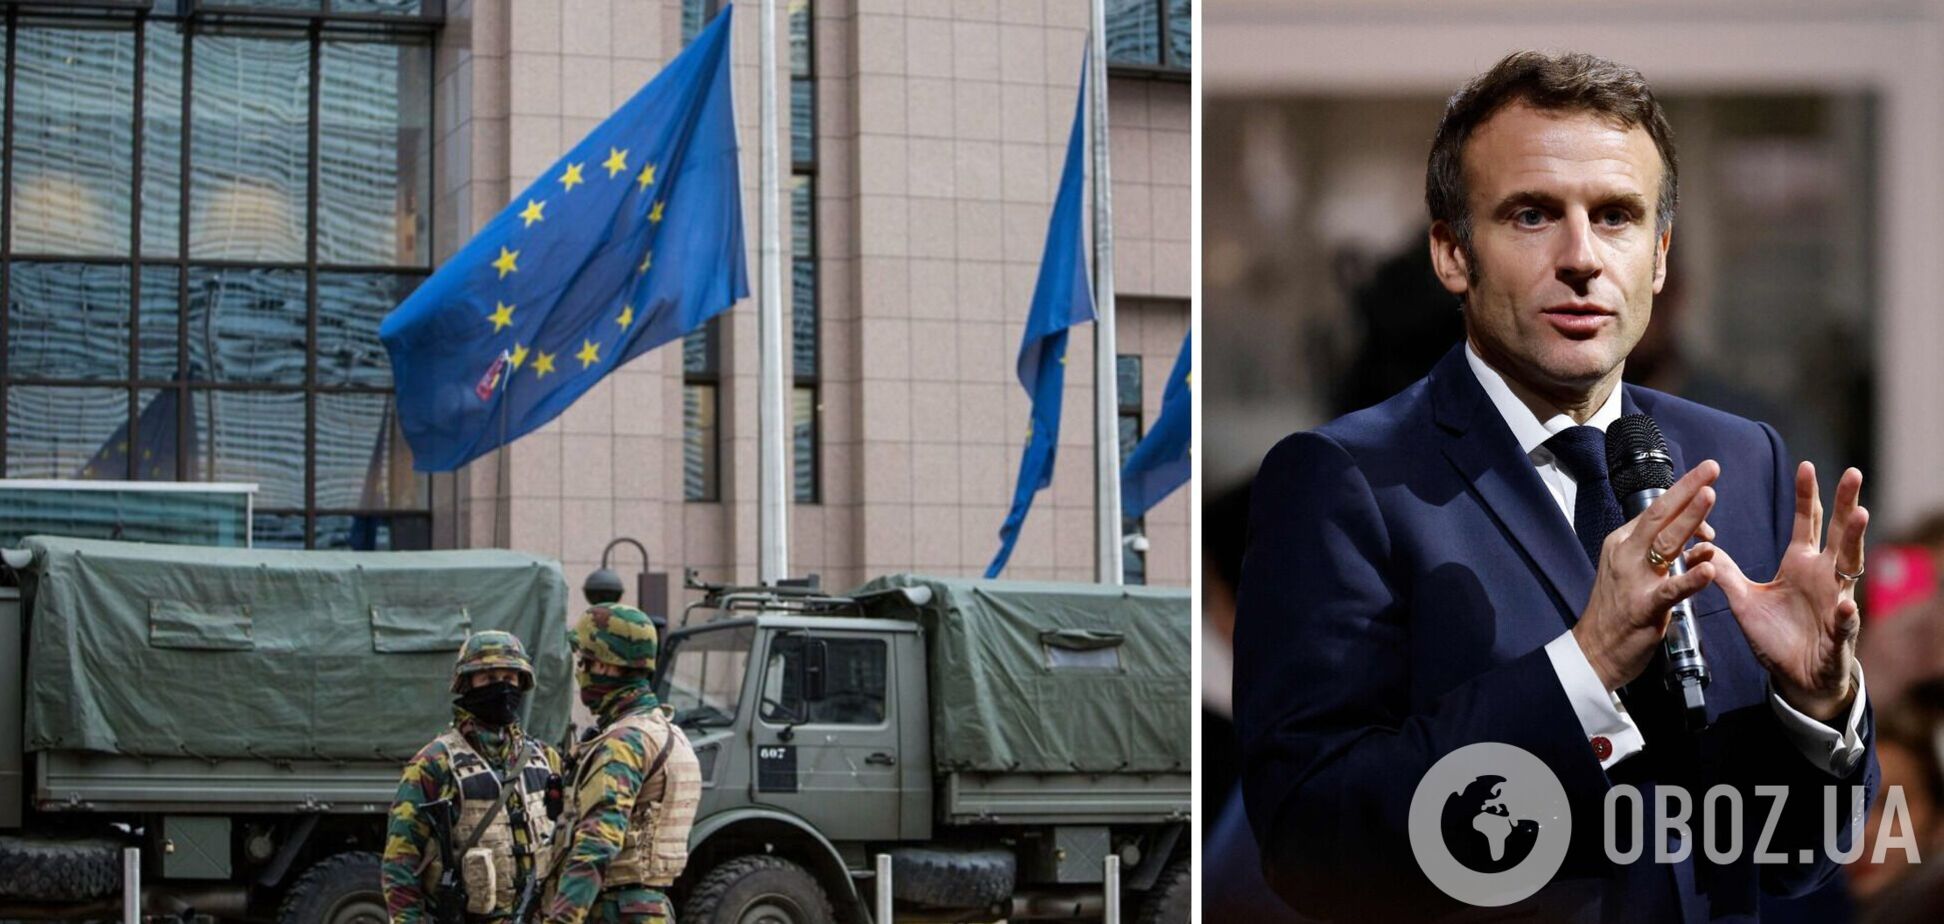 Макрон хочет возглавить Европу в вопросе помощи Украине: Politico указала на проблему